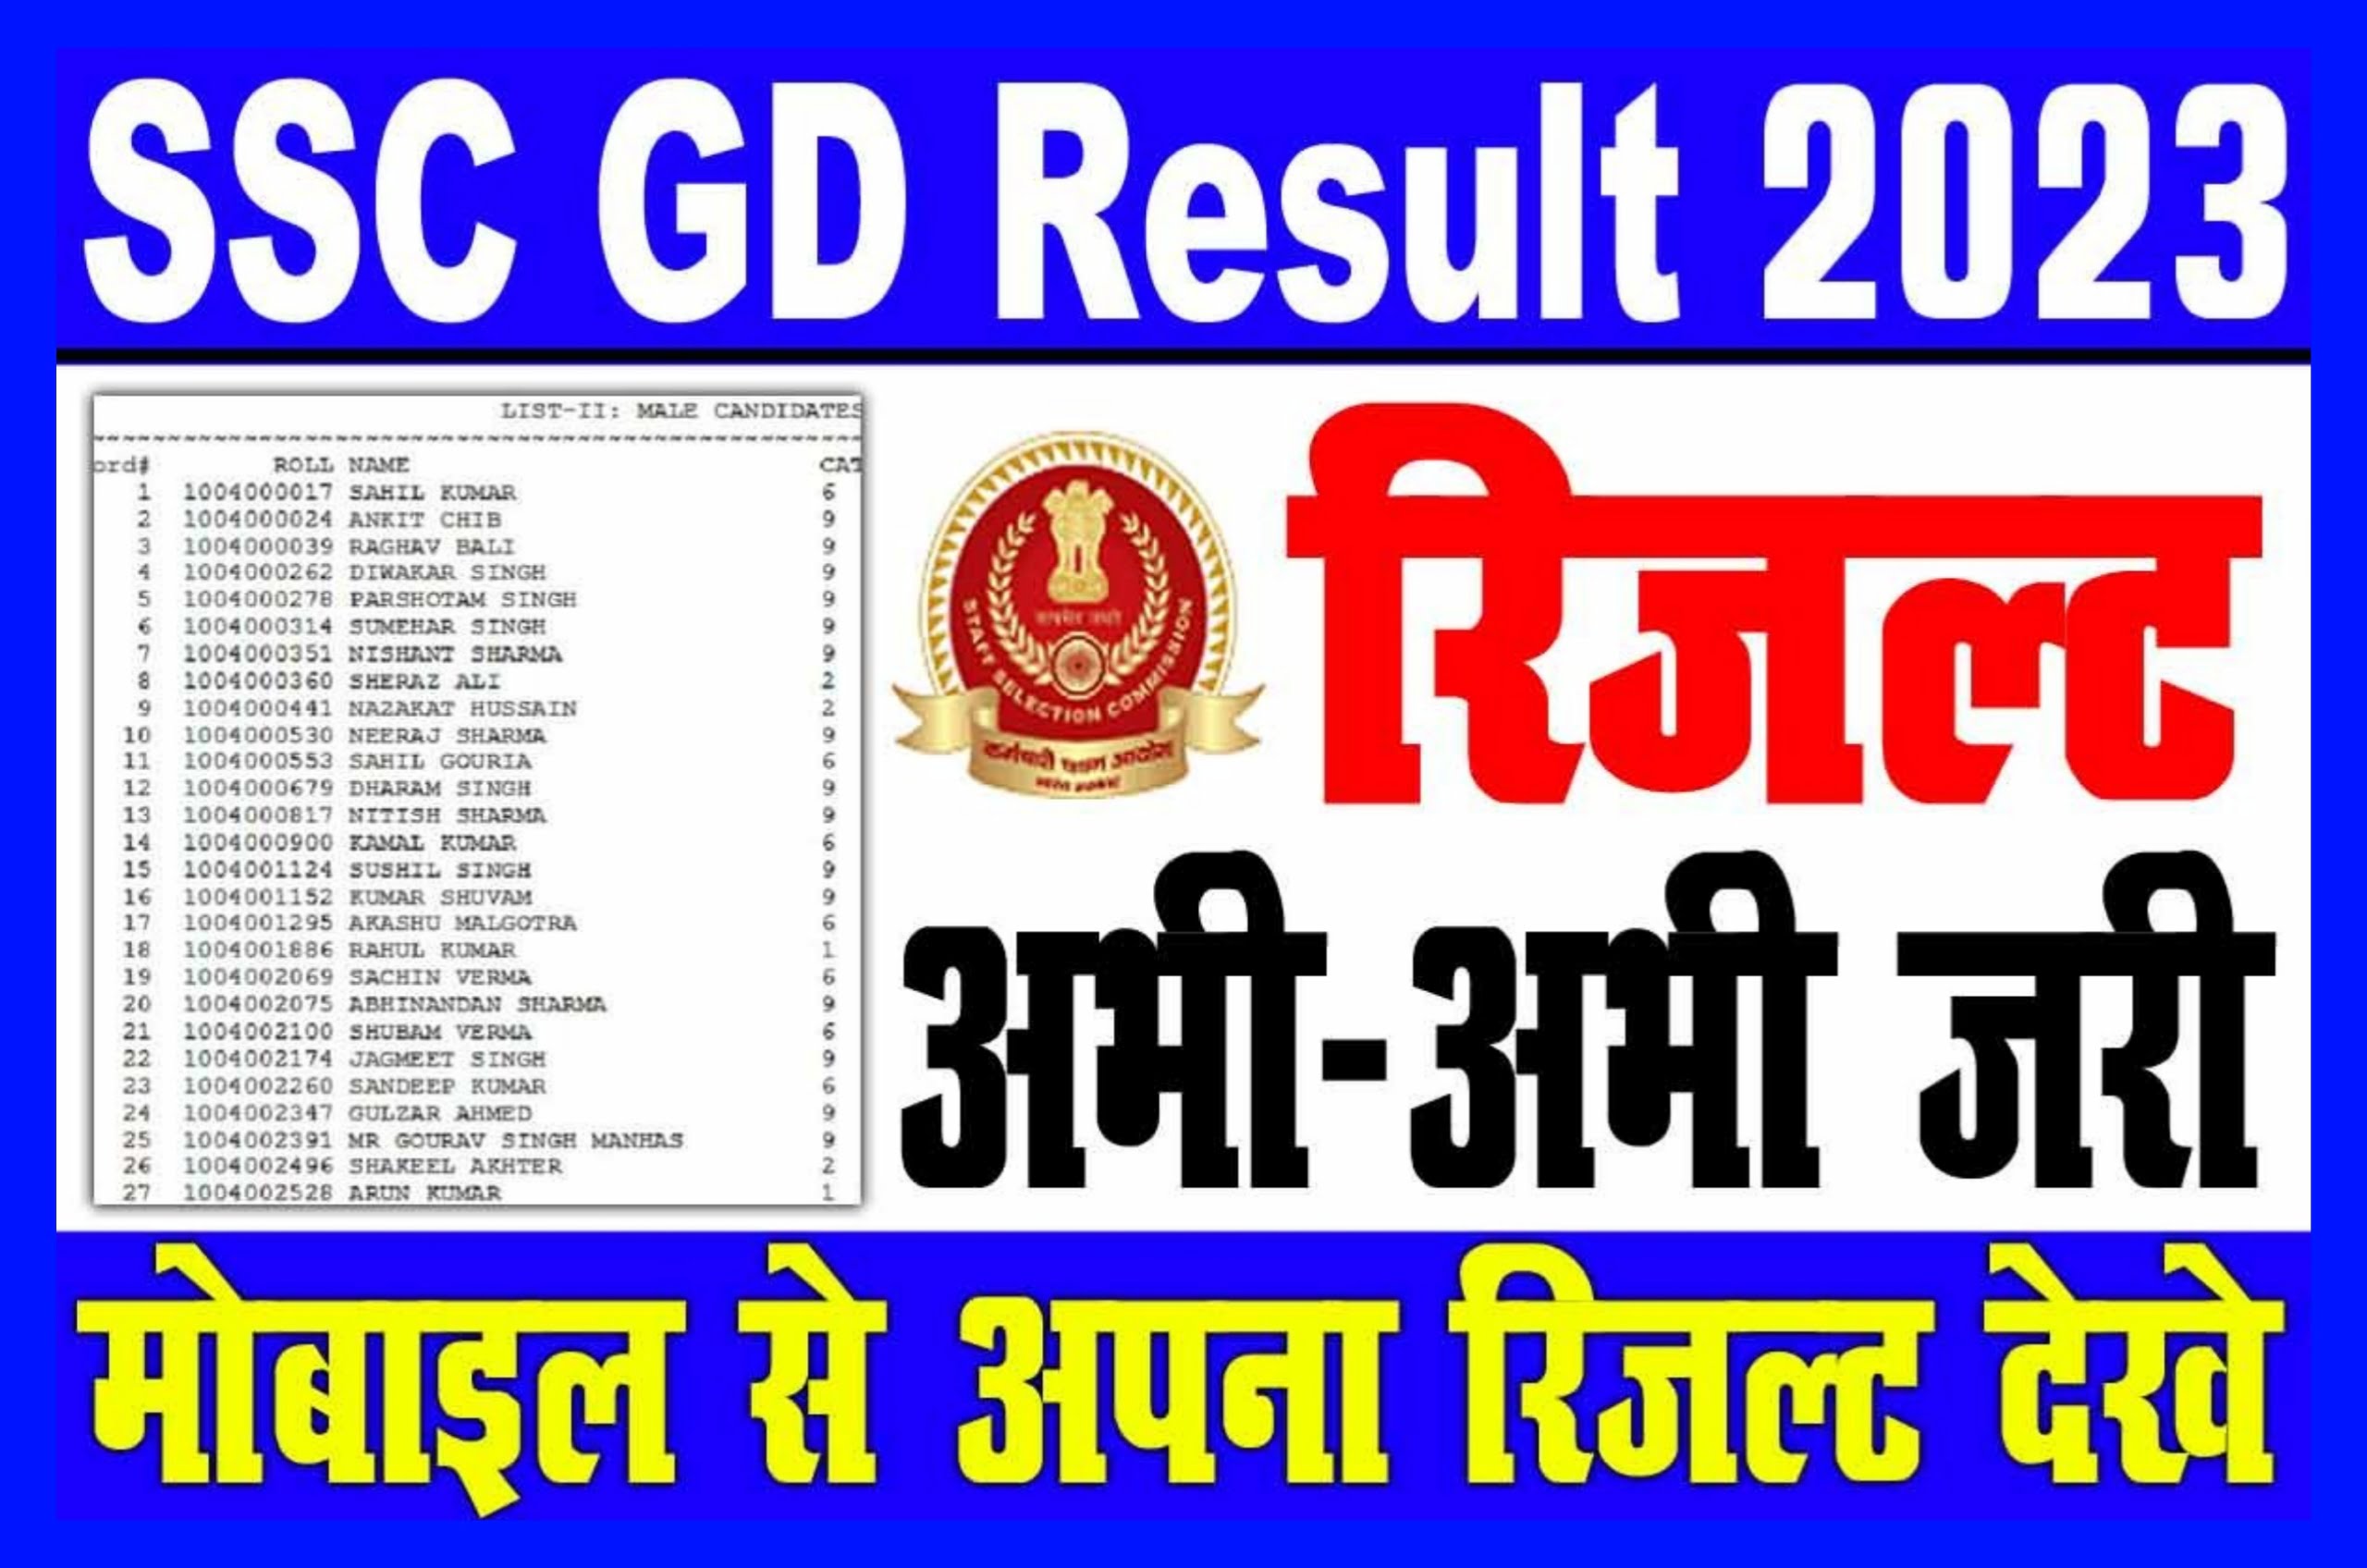 SSC GD Result 2023 Kaise Dekhe : यहां देखें एसएससी जीडी का रिजल्ट, आपको मिलेगा डायरेक्ट लिंक हुआ सिलेक्शन प्रोसेस की जानकारी Best Link